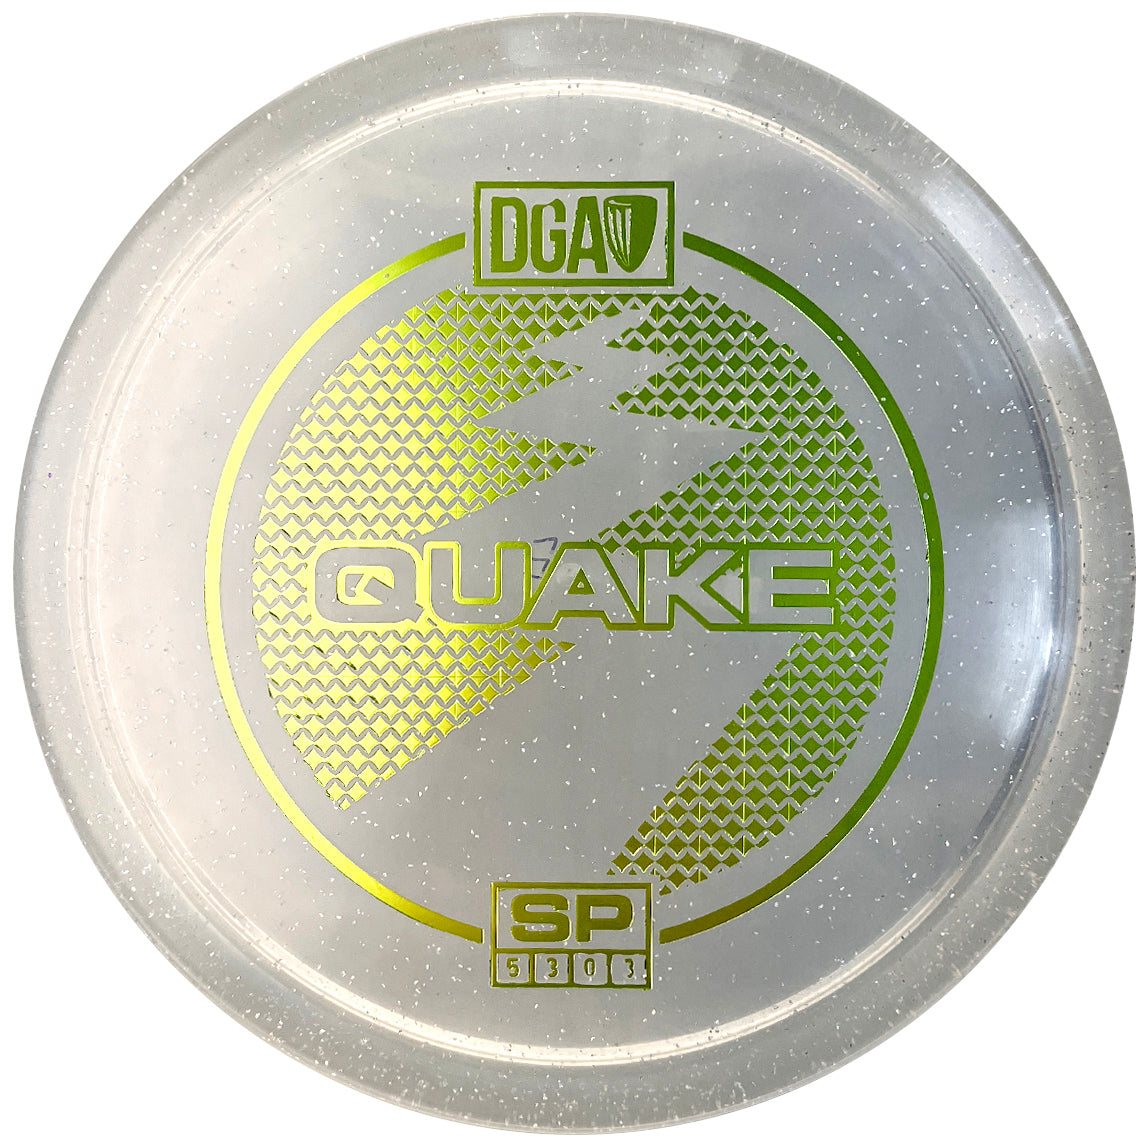 DGA SP Line Quake